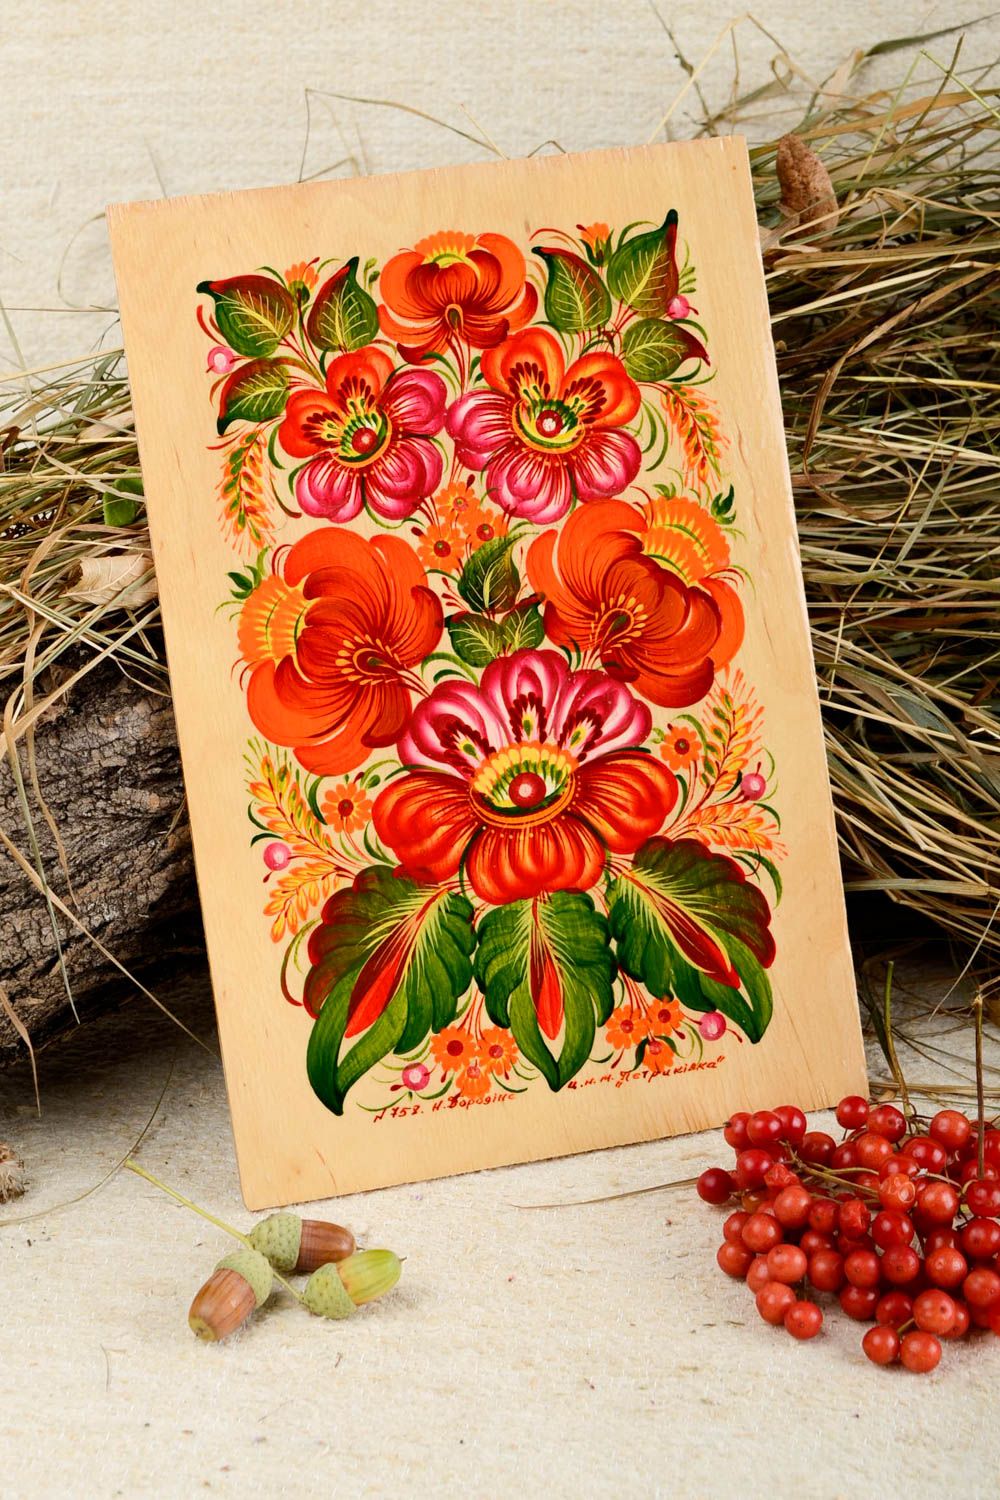 Handmade Geschenk Einzugsfeier ausgefallener Dekorartikel Bild aus Holz foto 1